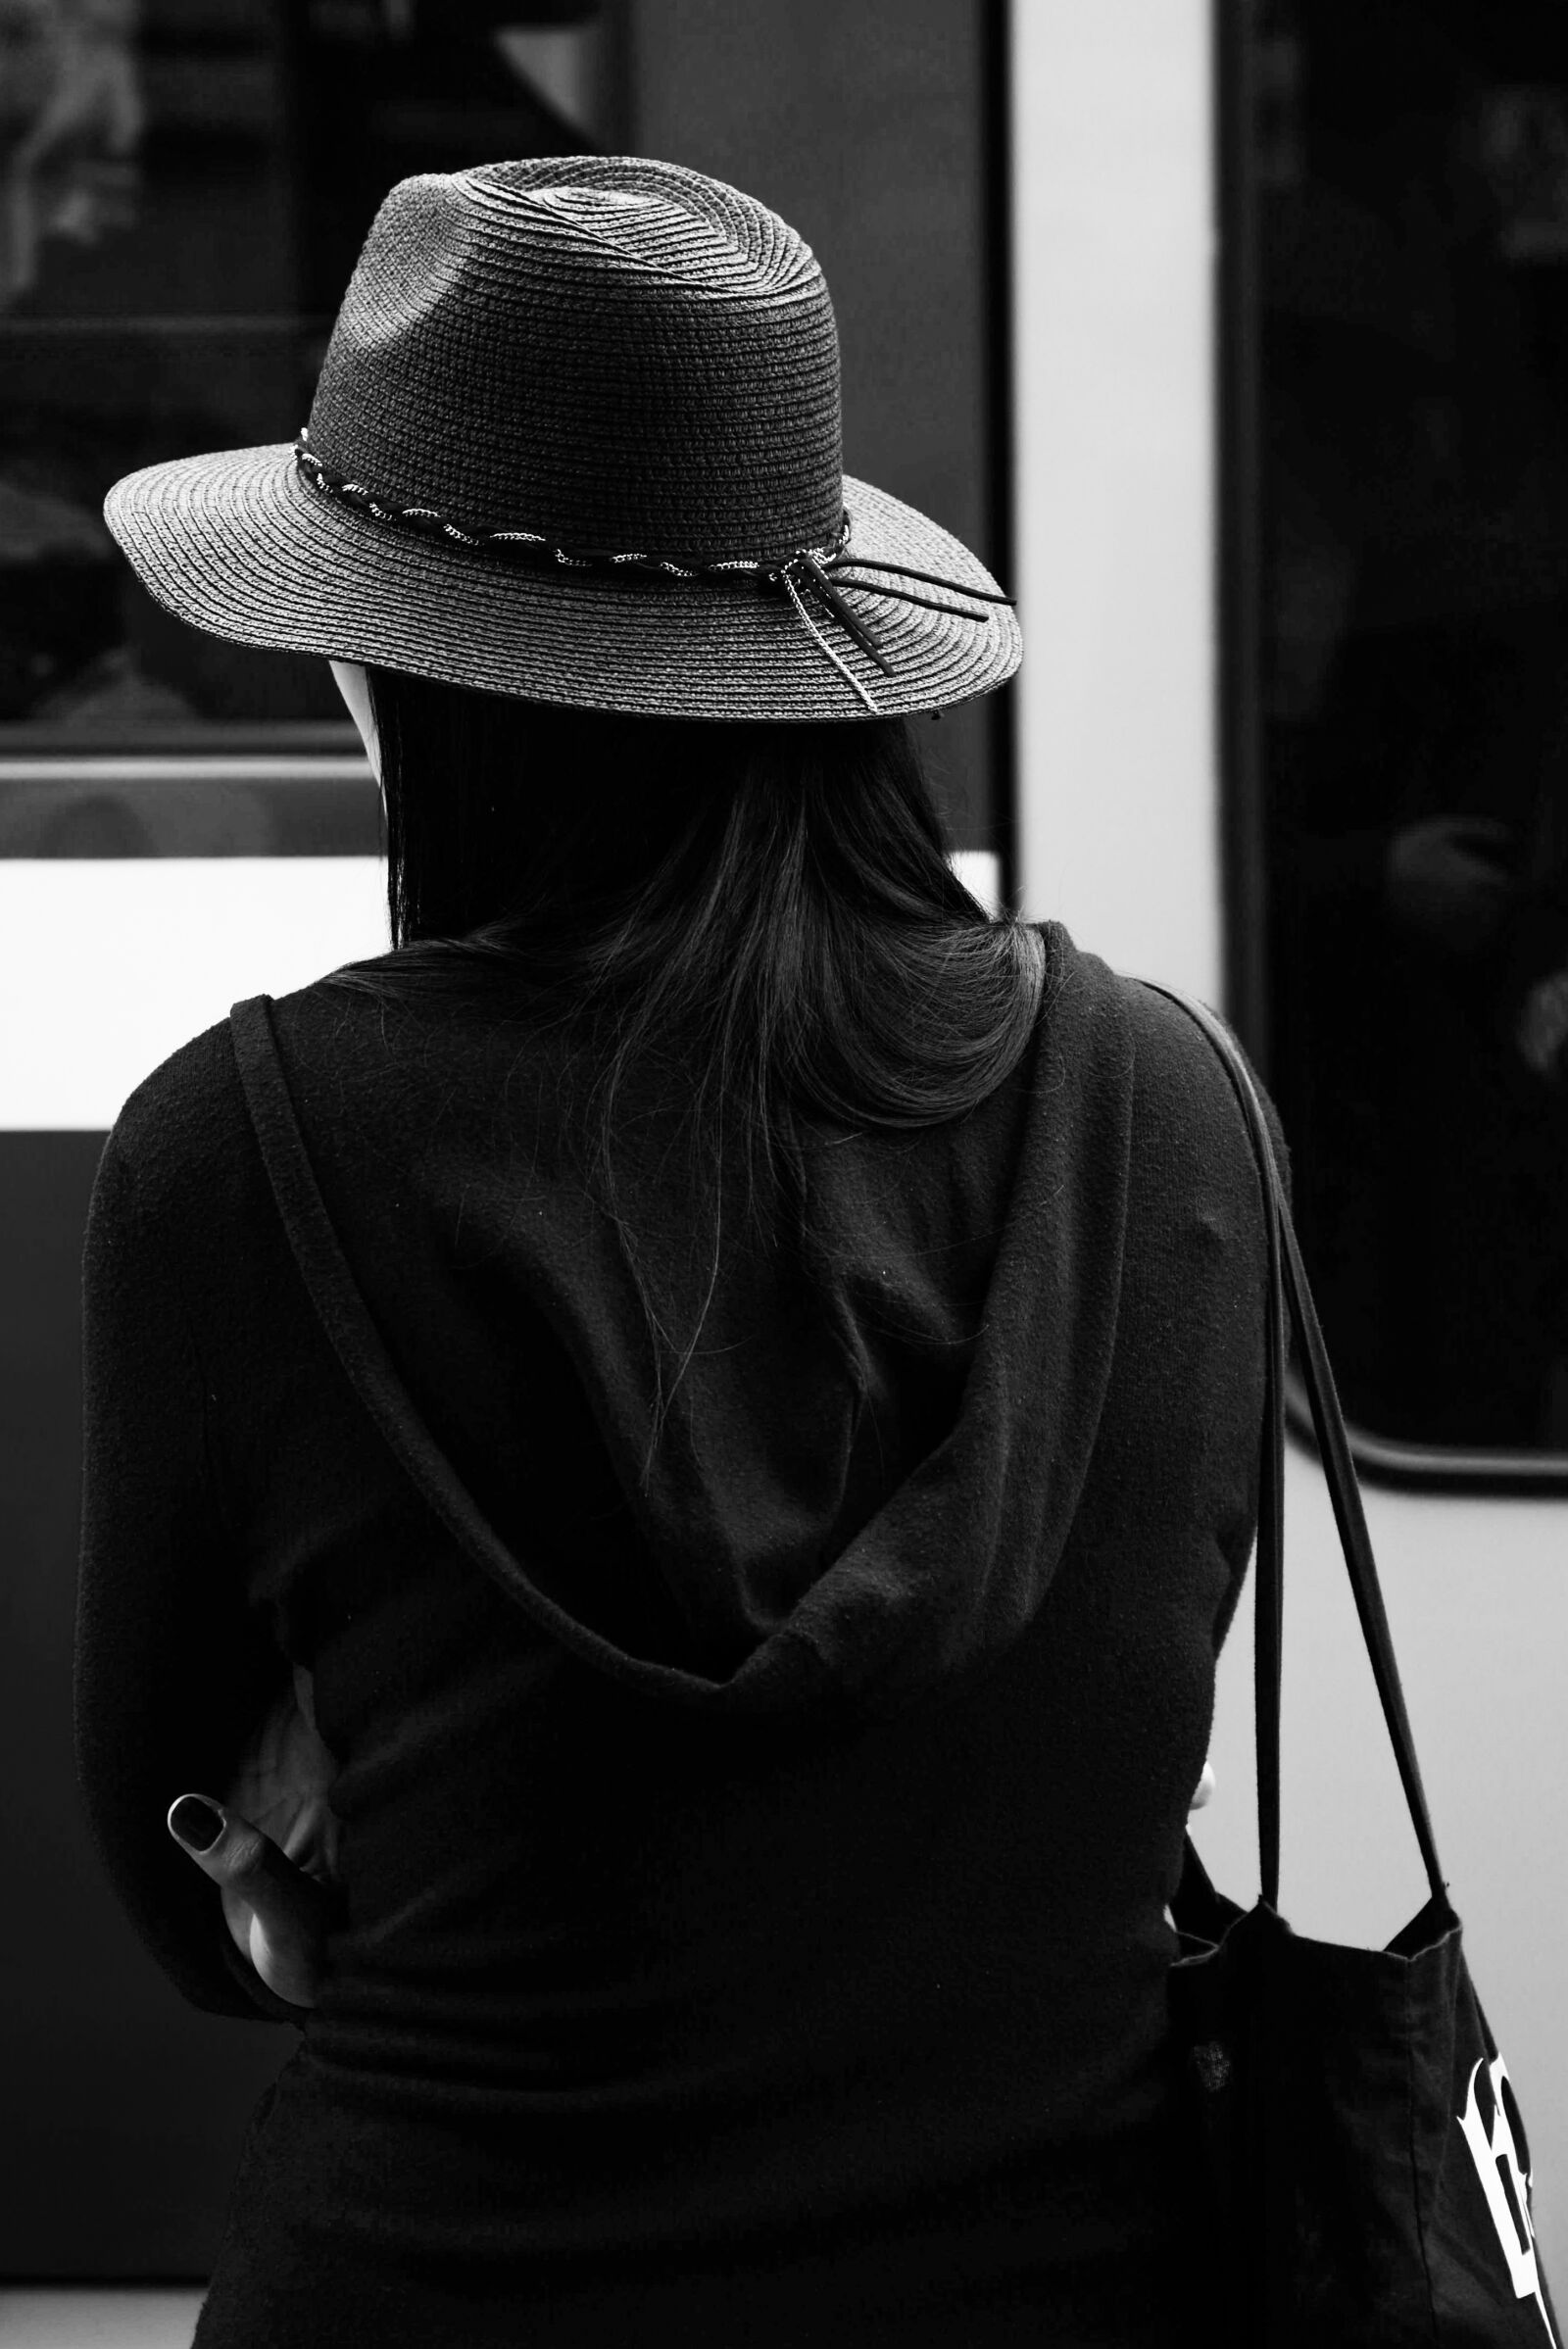 Nikon AF-S Nikkor 24-85mm F3.5-4.5G ED VR sample photo. Woman, hat, black and photography